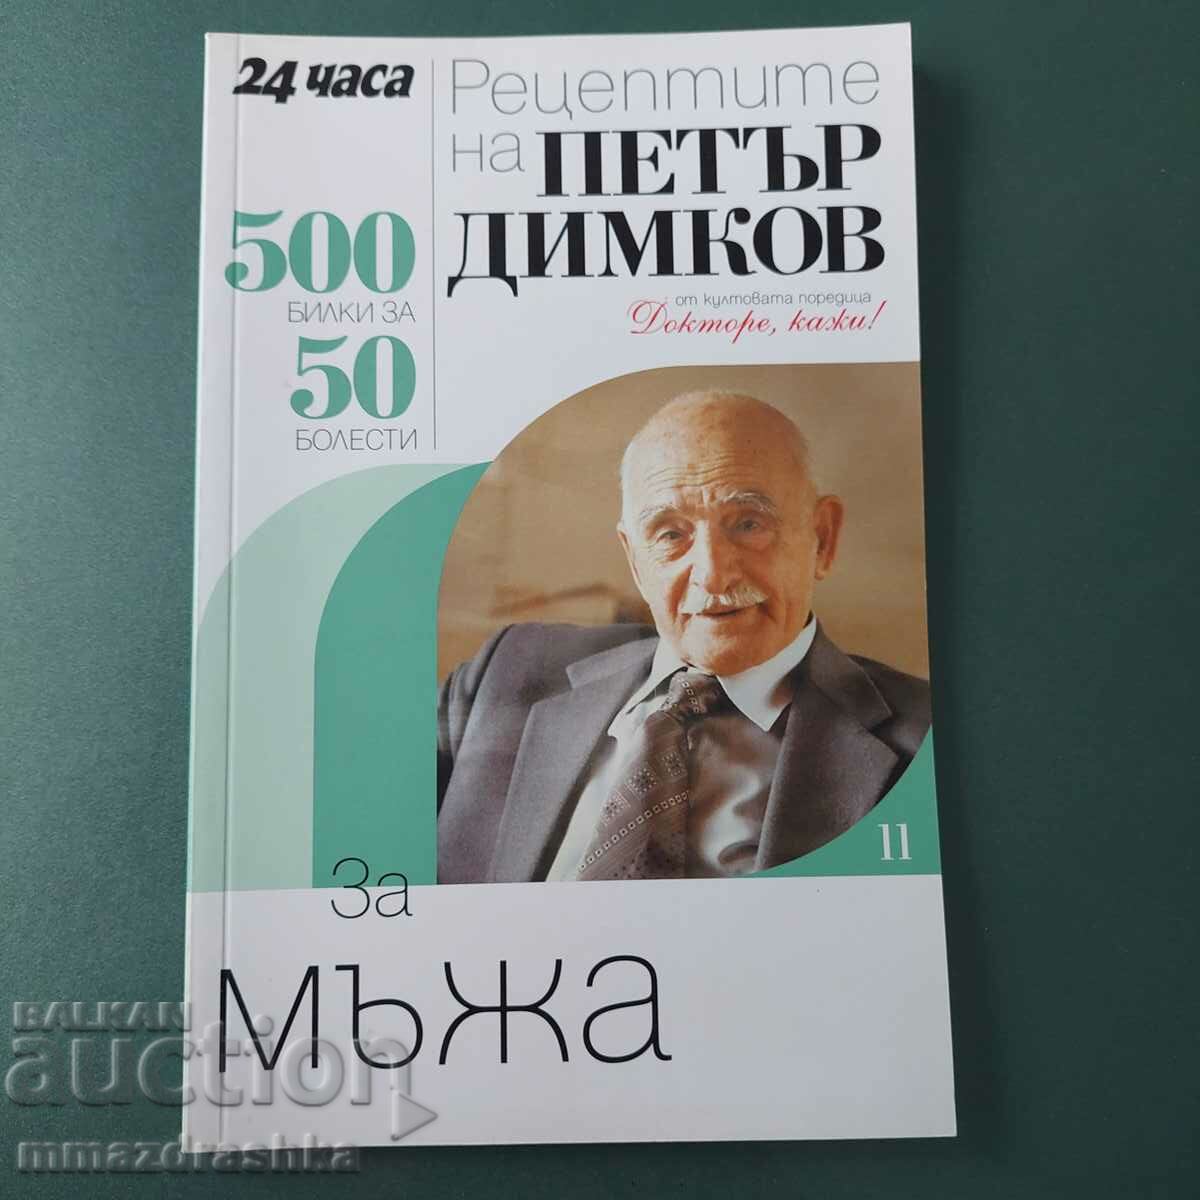 500 recipes for men, Petar Dimkov